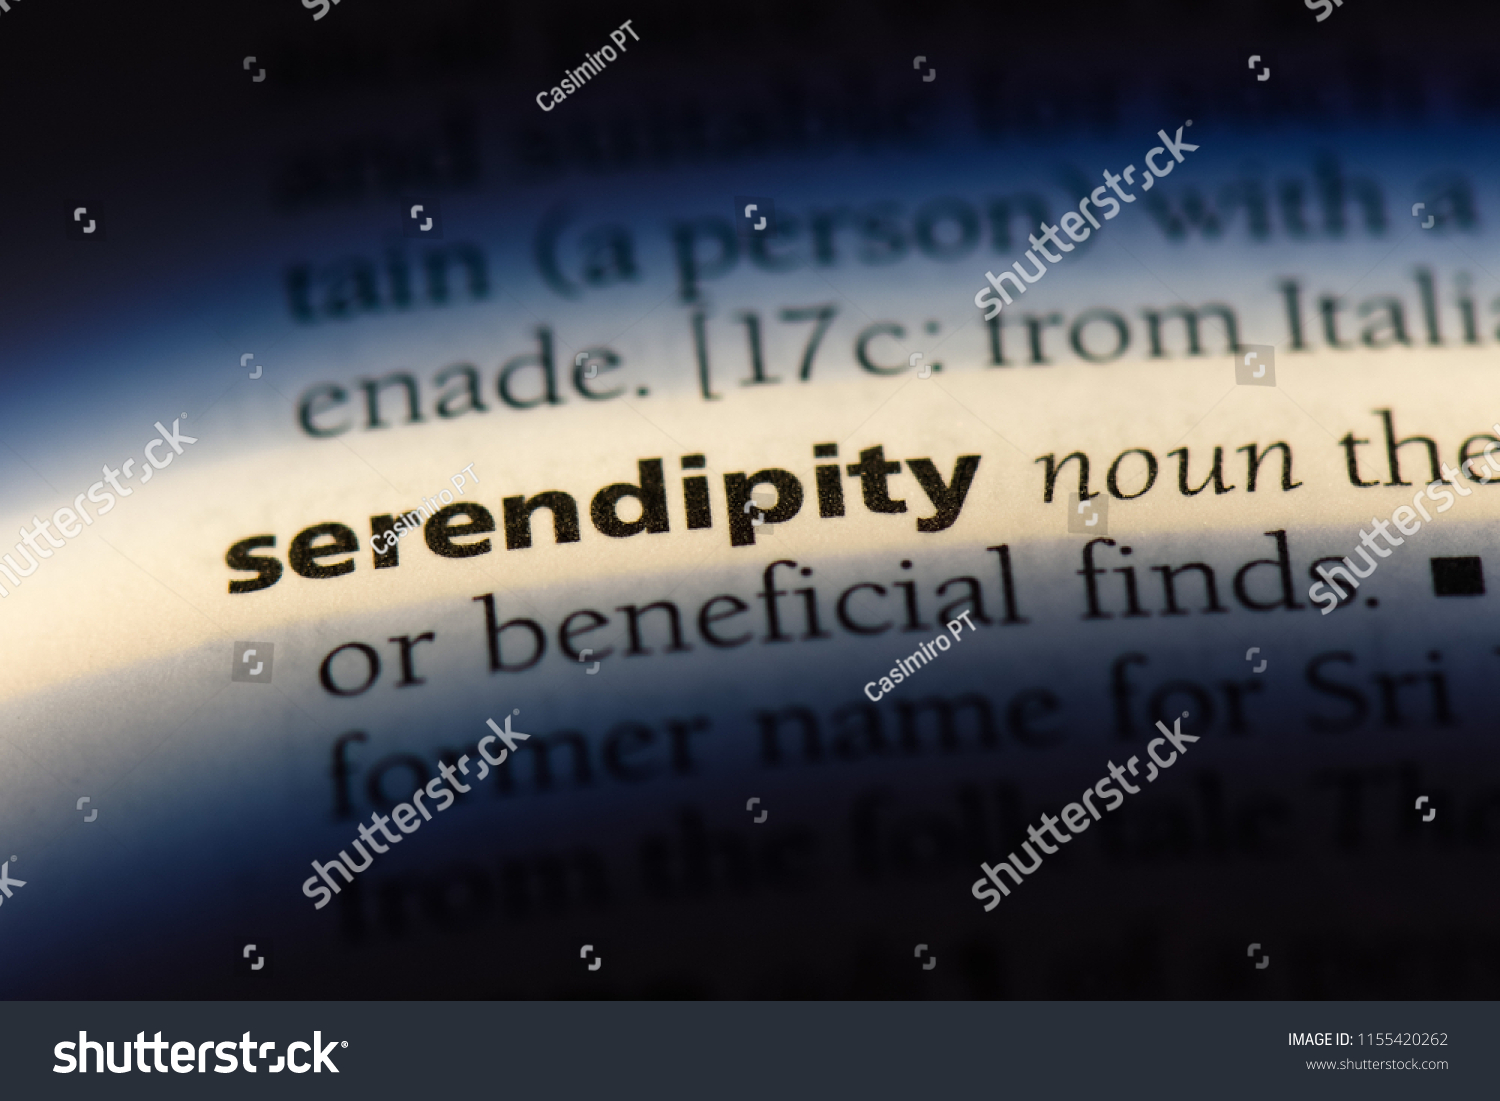 Define serendipity